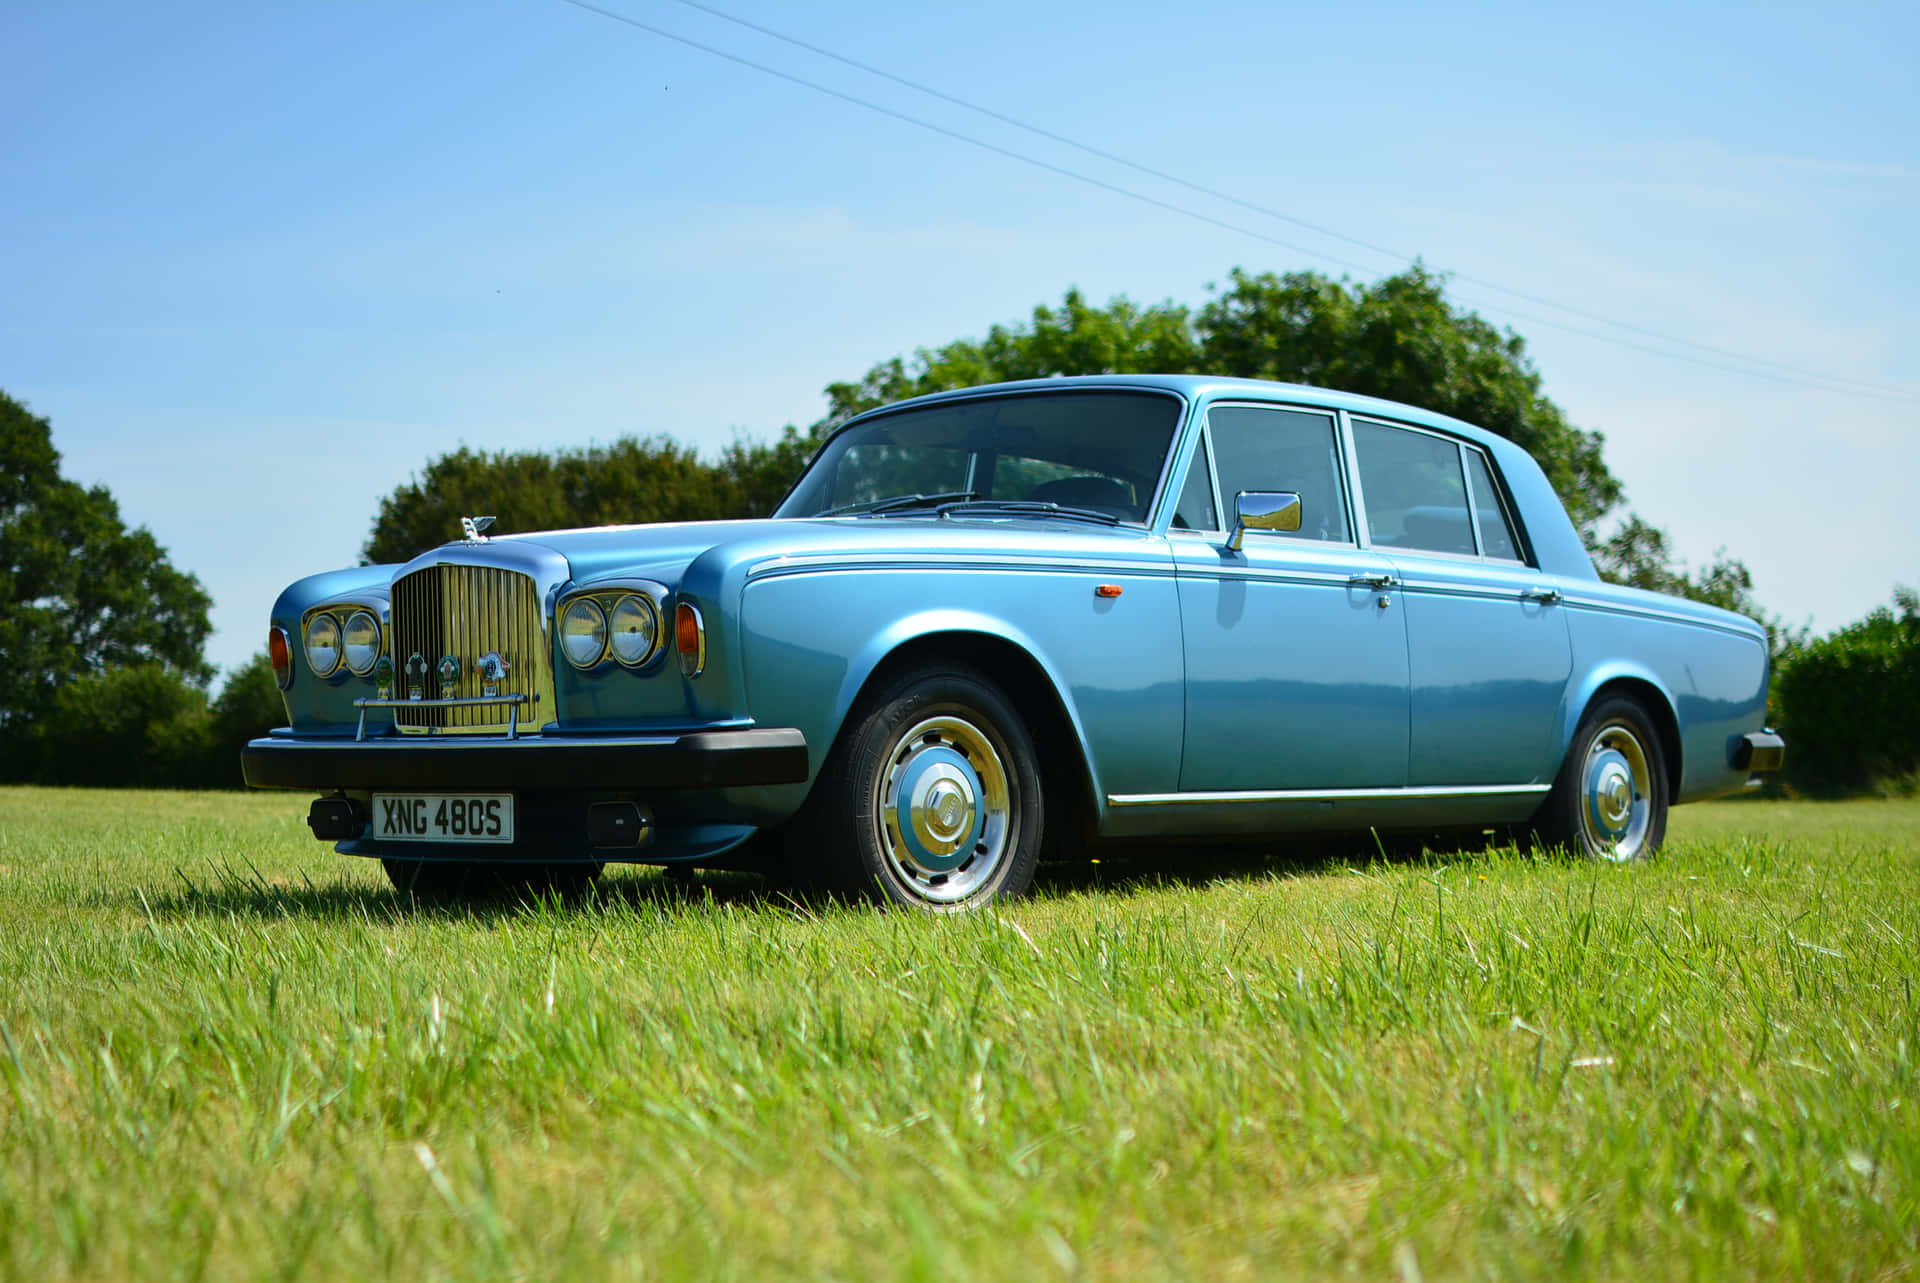 Classic Elegance - Bentley T2 Luxury Car Wallpaper